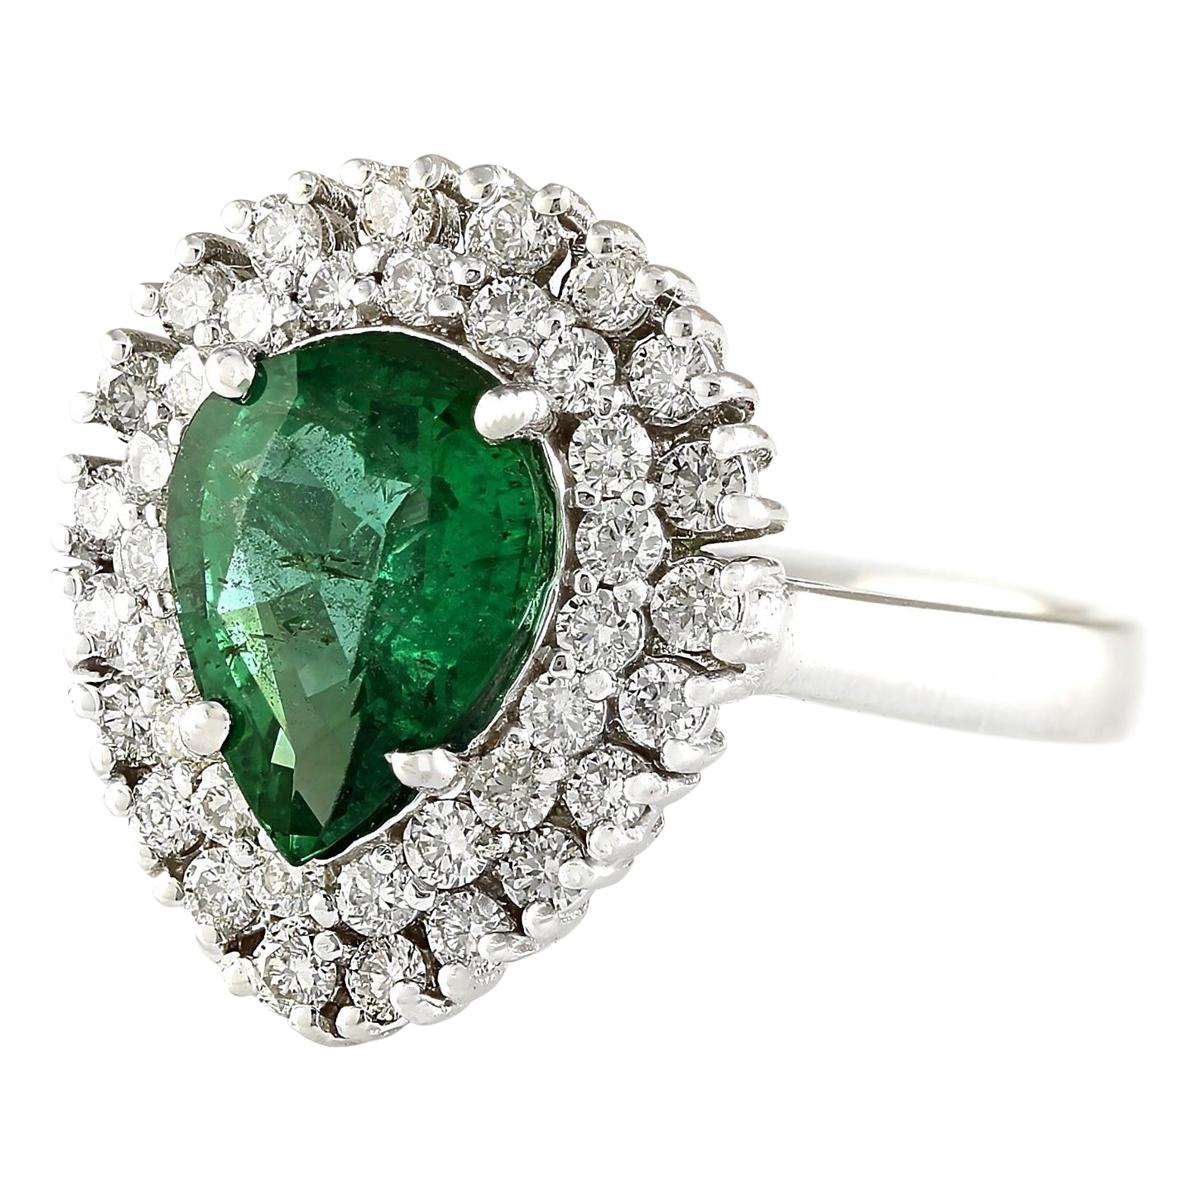 2.65 Carat Natural Emerald 14 Karat White Gold Diamond Ring
Stamped: 14K White Gold
Total Ring Weight: 5.9 Gram
Total Natural Emerald Weight is 1.85 Carat (Measures: 10.00x8.00 mm)
Color: Green
Total Natural Diamond Weight is 0.80 Carat
Color: F-G,